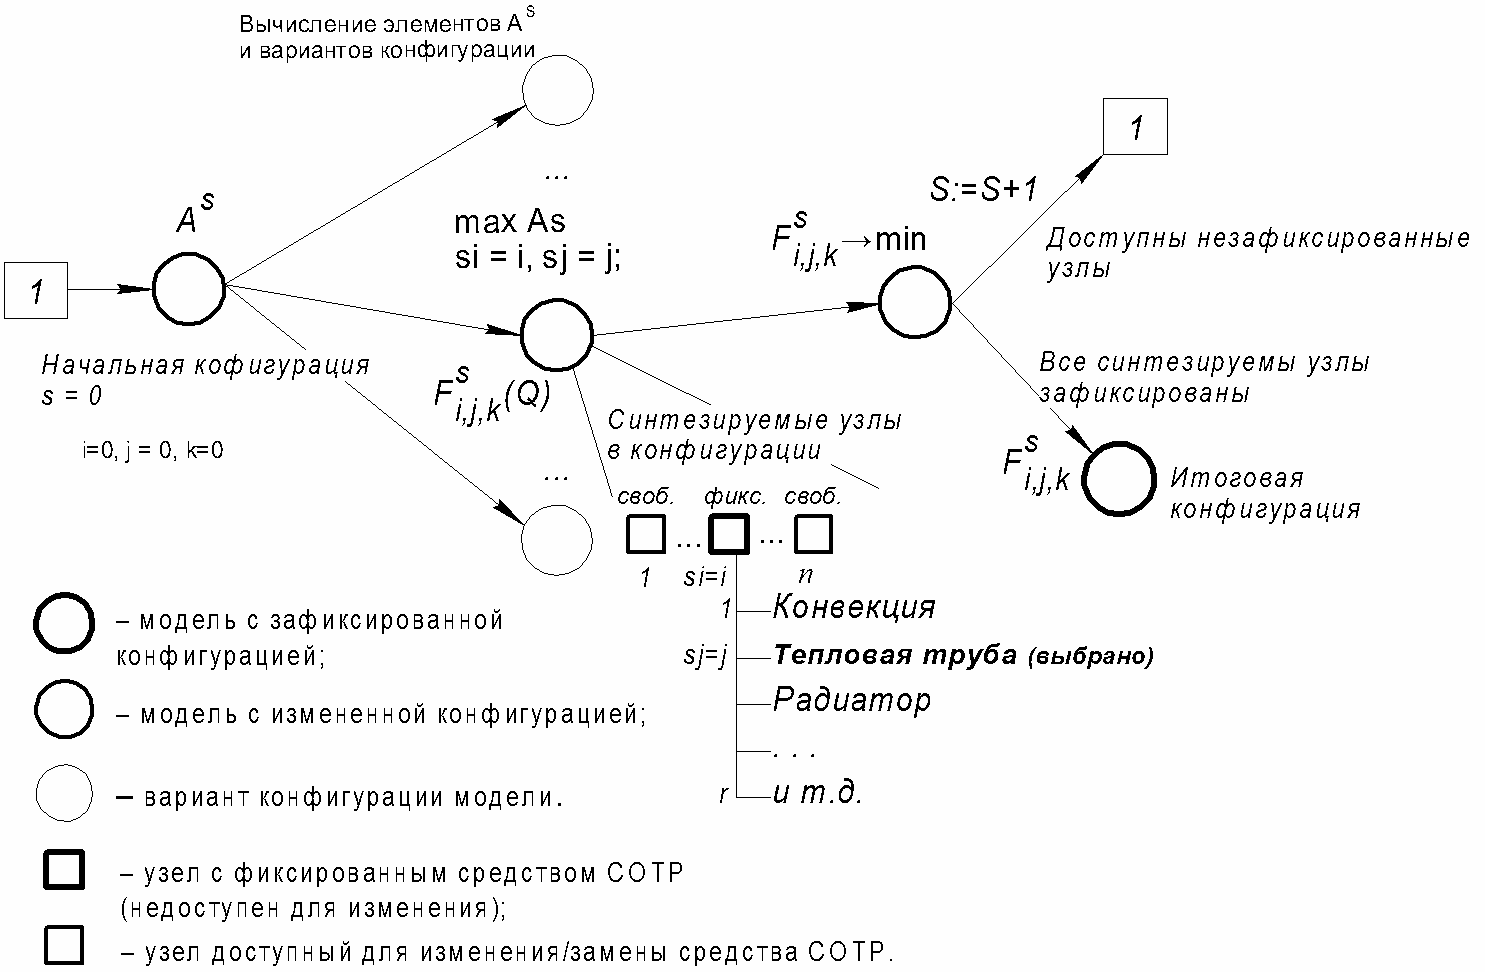 Рисунок 2. Базовые шаги синтеза средств СОТР и переходы между конфигурациями начиная от исходной модели